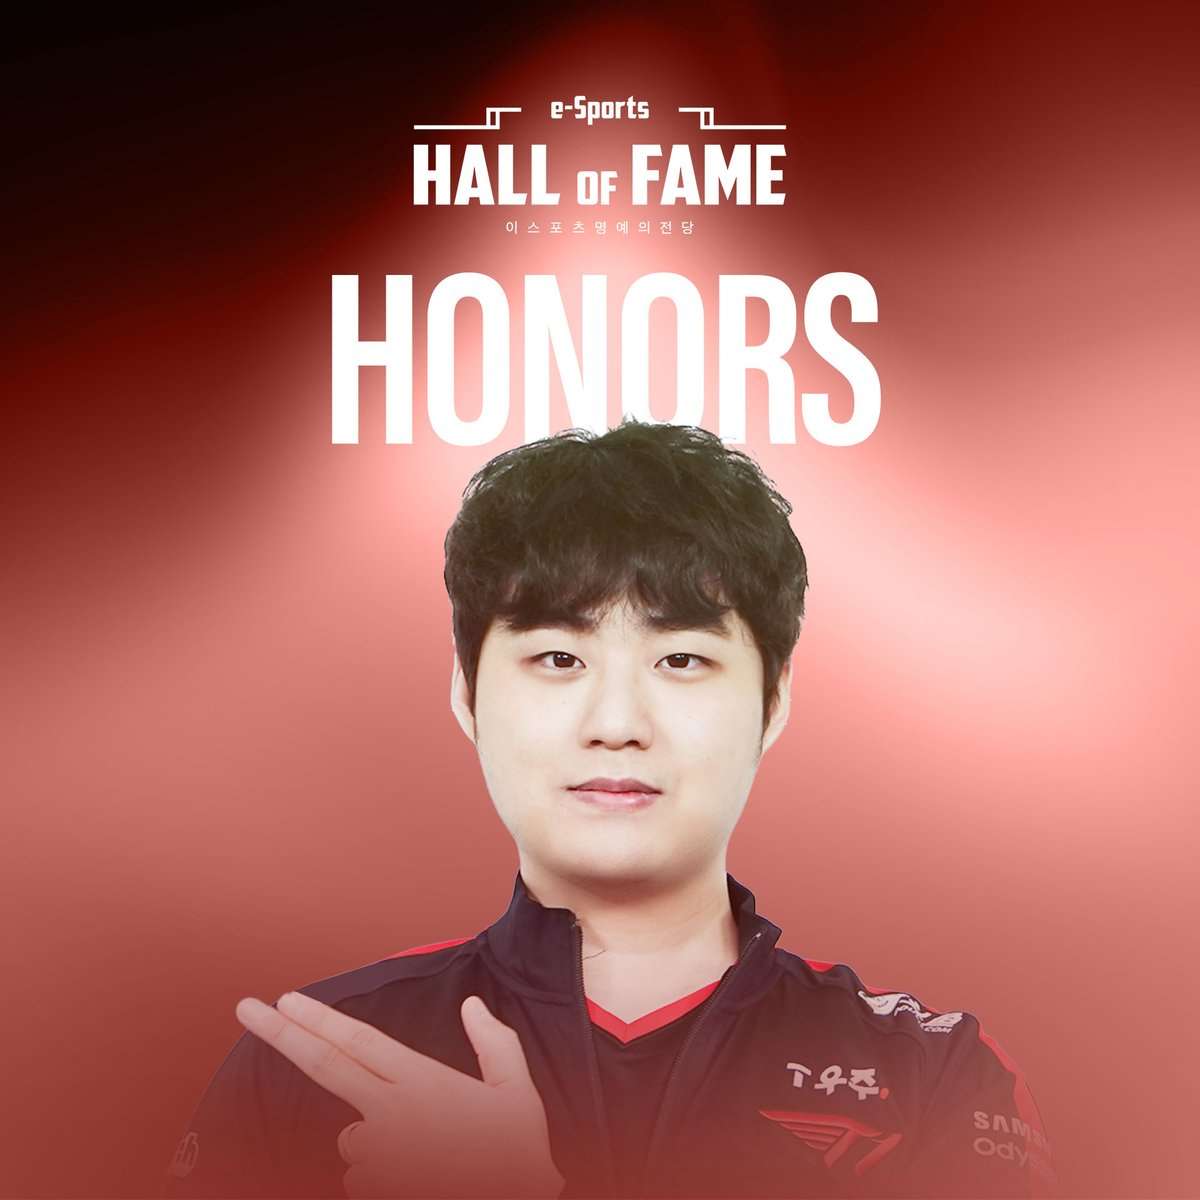 Cựu tuyển thủ LMHT của T1 - Bang cũng được ghi tên vào Hall of Fame.